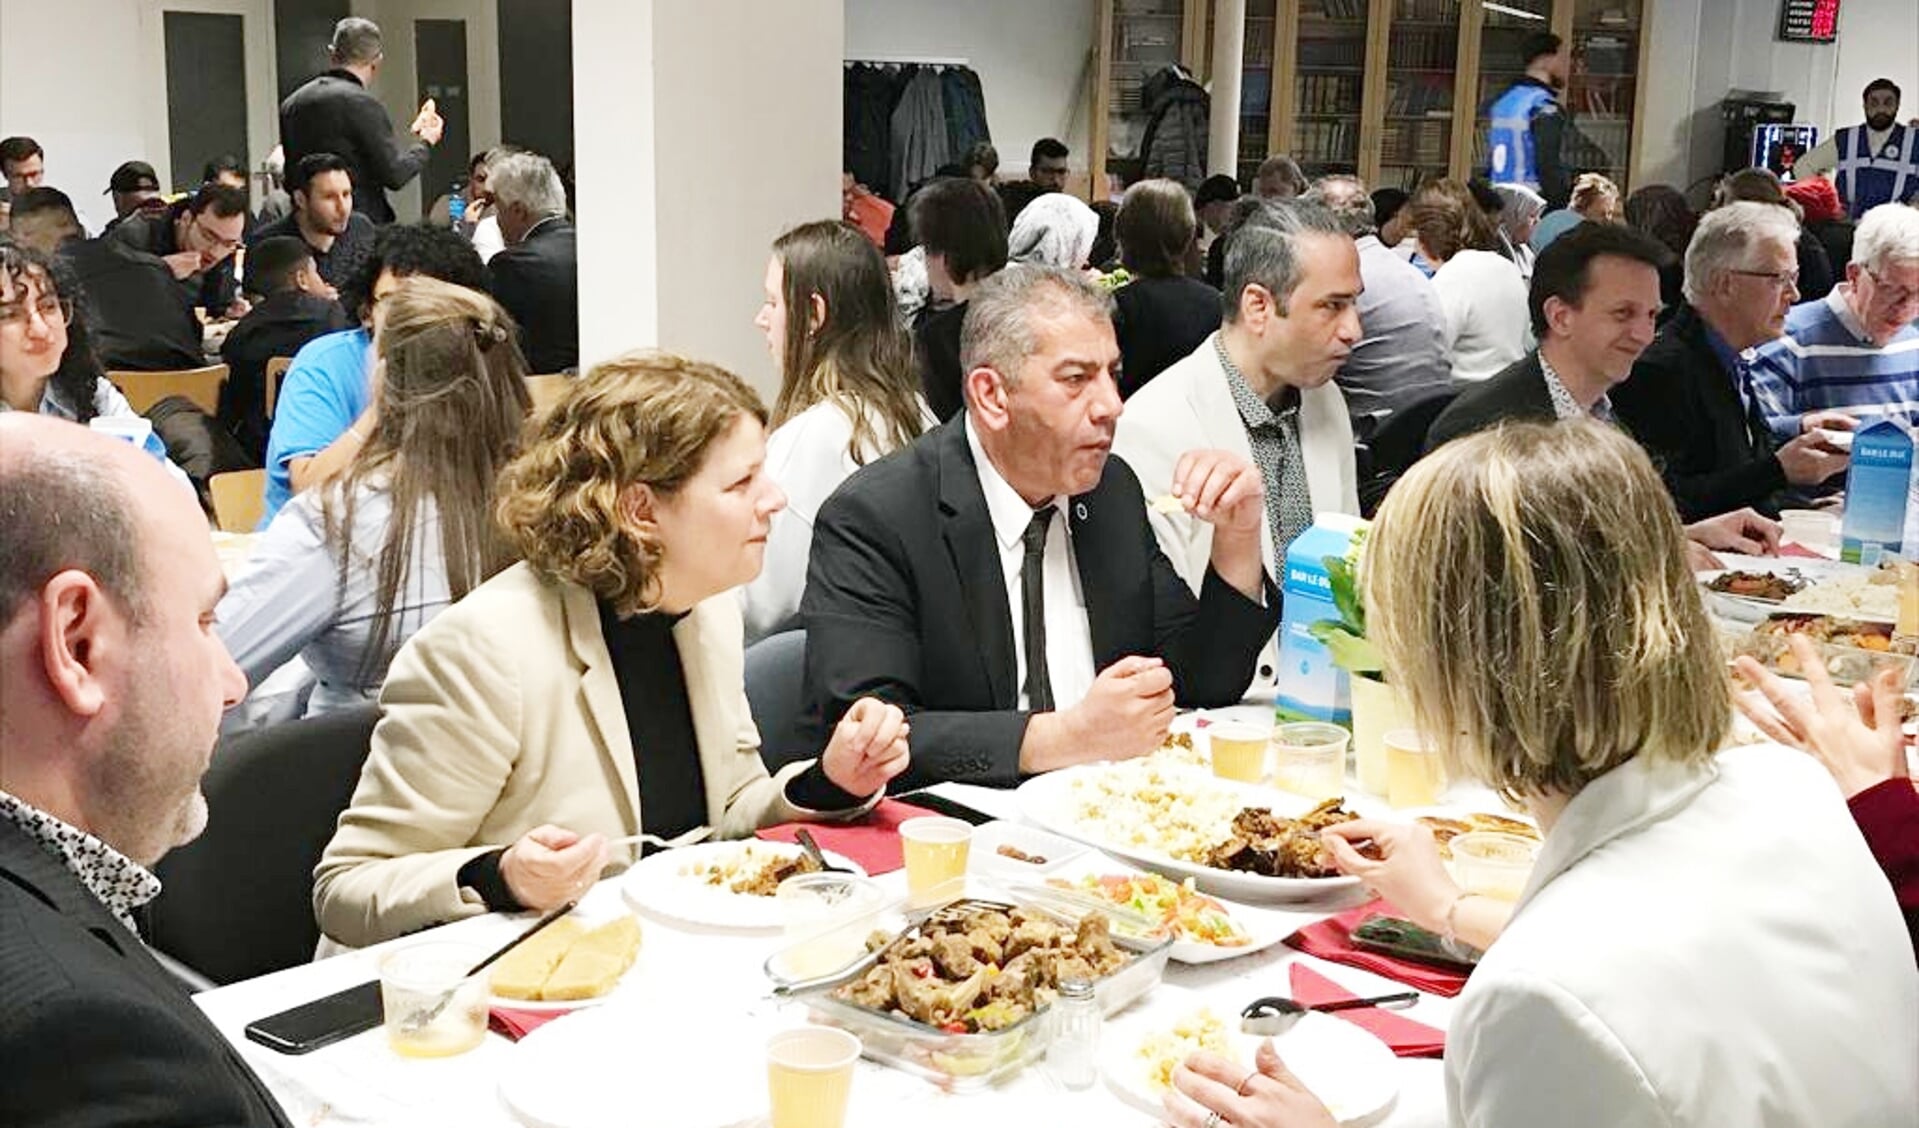 Burgemeester van Bijsterveldt neemt deel aan de iftar maaltijd.